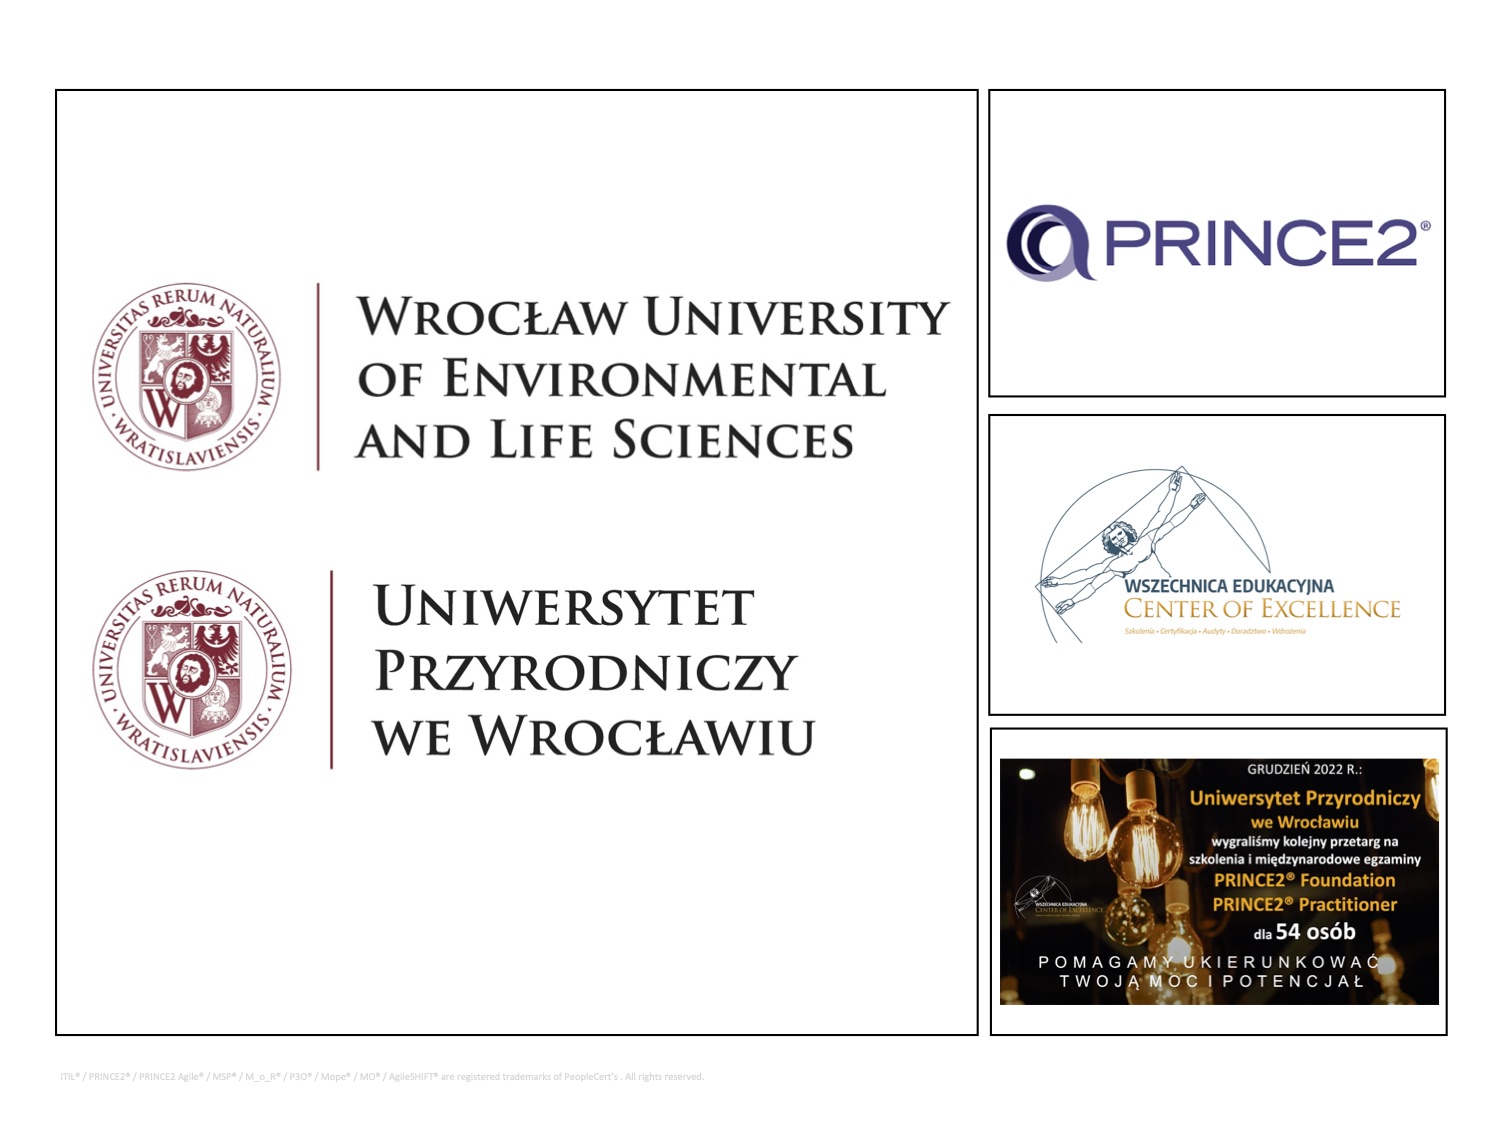 Uniwersytet Przyrodniczy we Wrocławiu - PRINCE2- Wszechnnica Edukacyjna.jpg